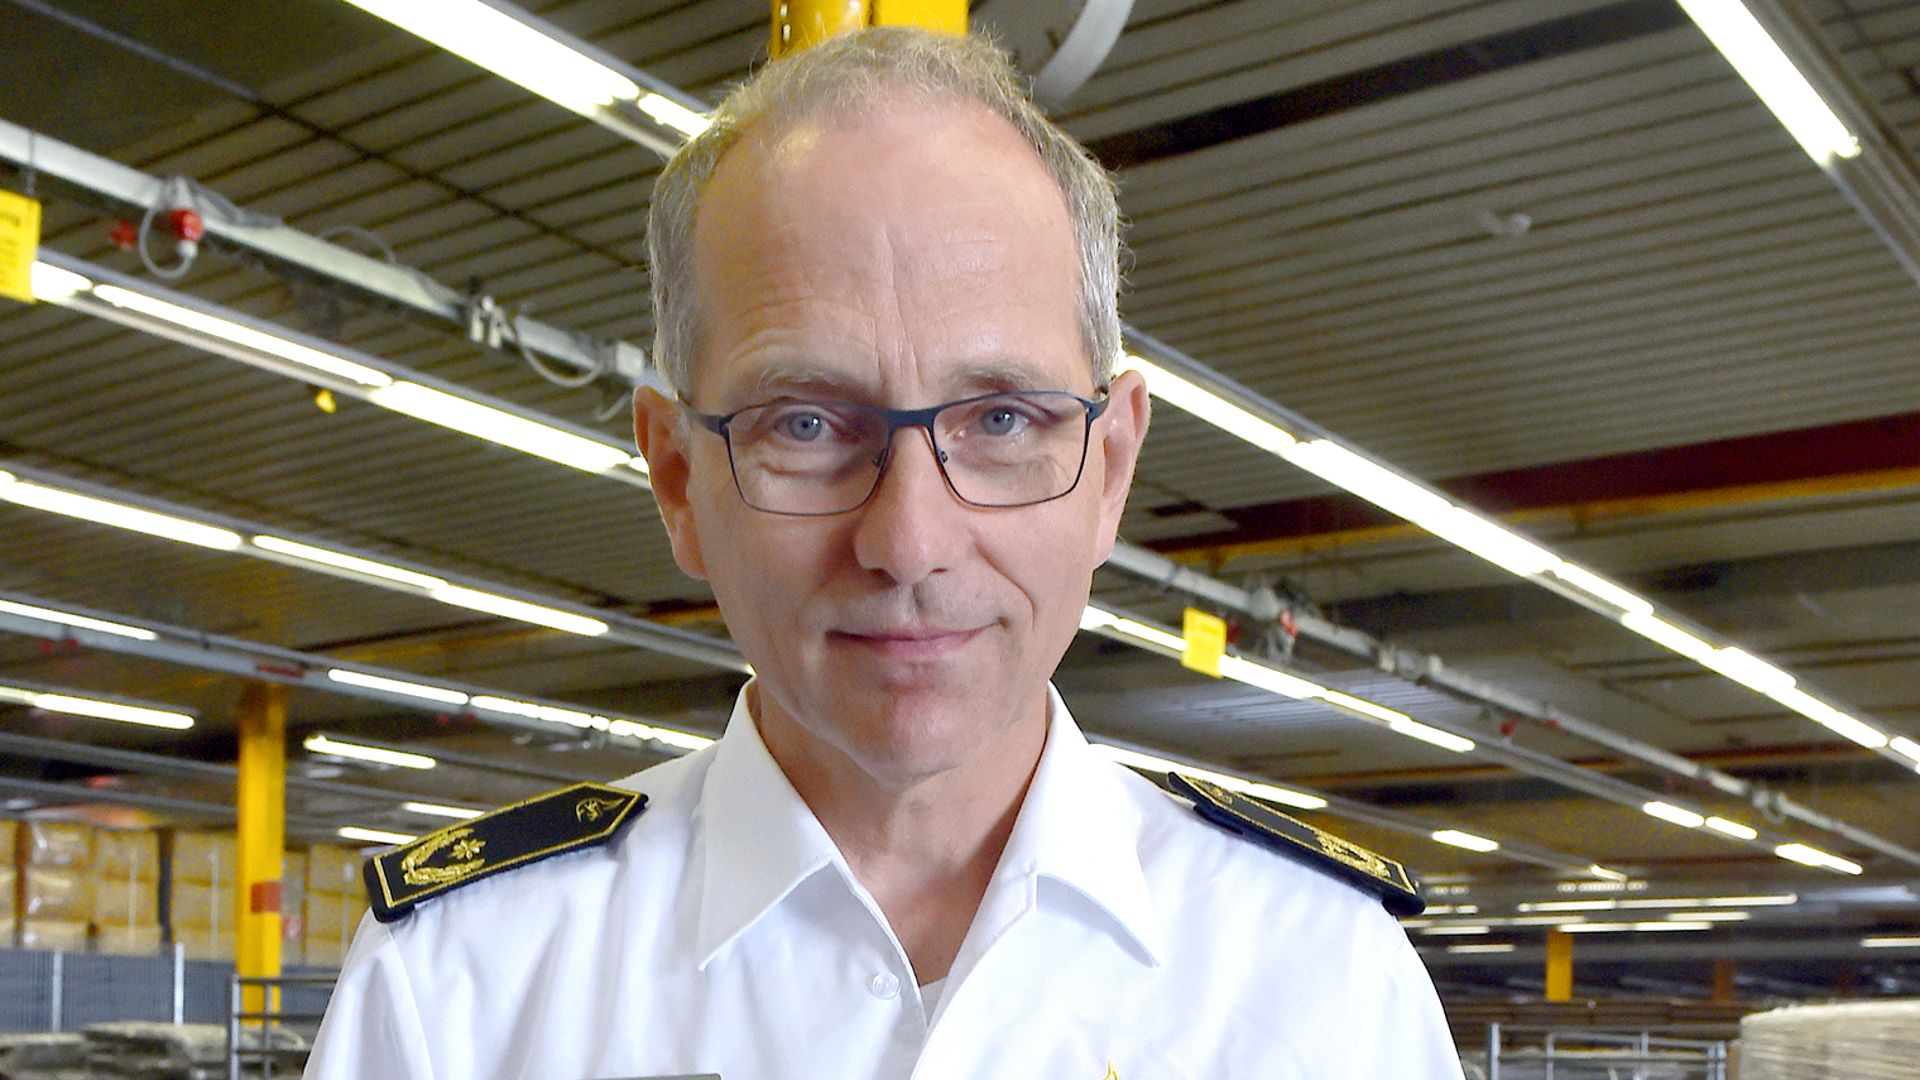 Jürgen Link ist im Regierungspräsidium als stellvertretender Referatsleiter für Katastrophenschutz zuständig.

